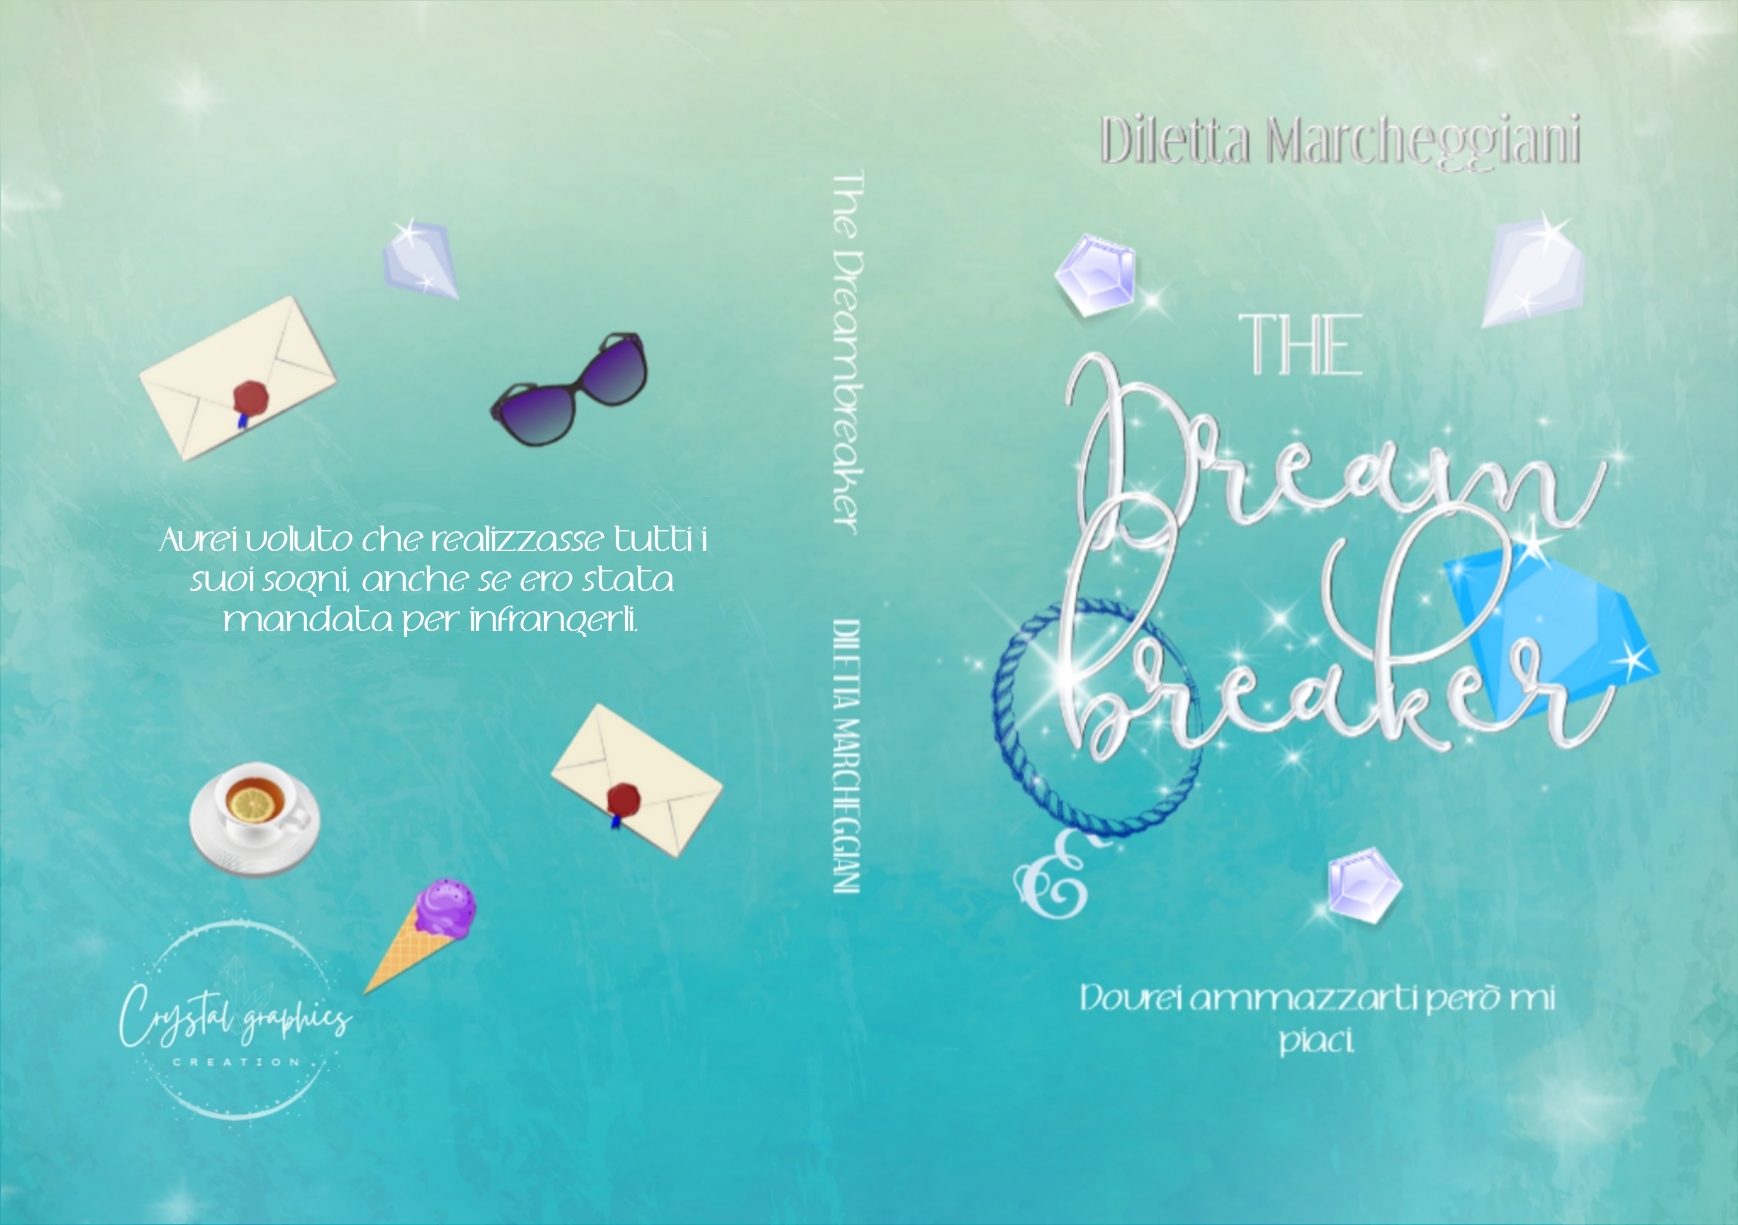 Segnalazione di uscita “The Dreambreaker” di Diletta Marcheggiani